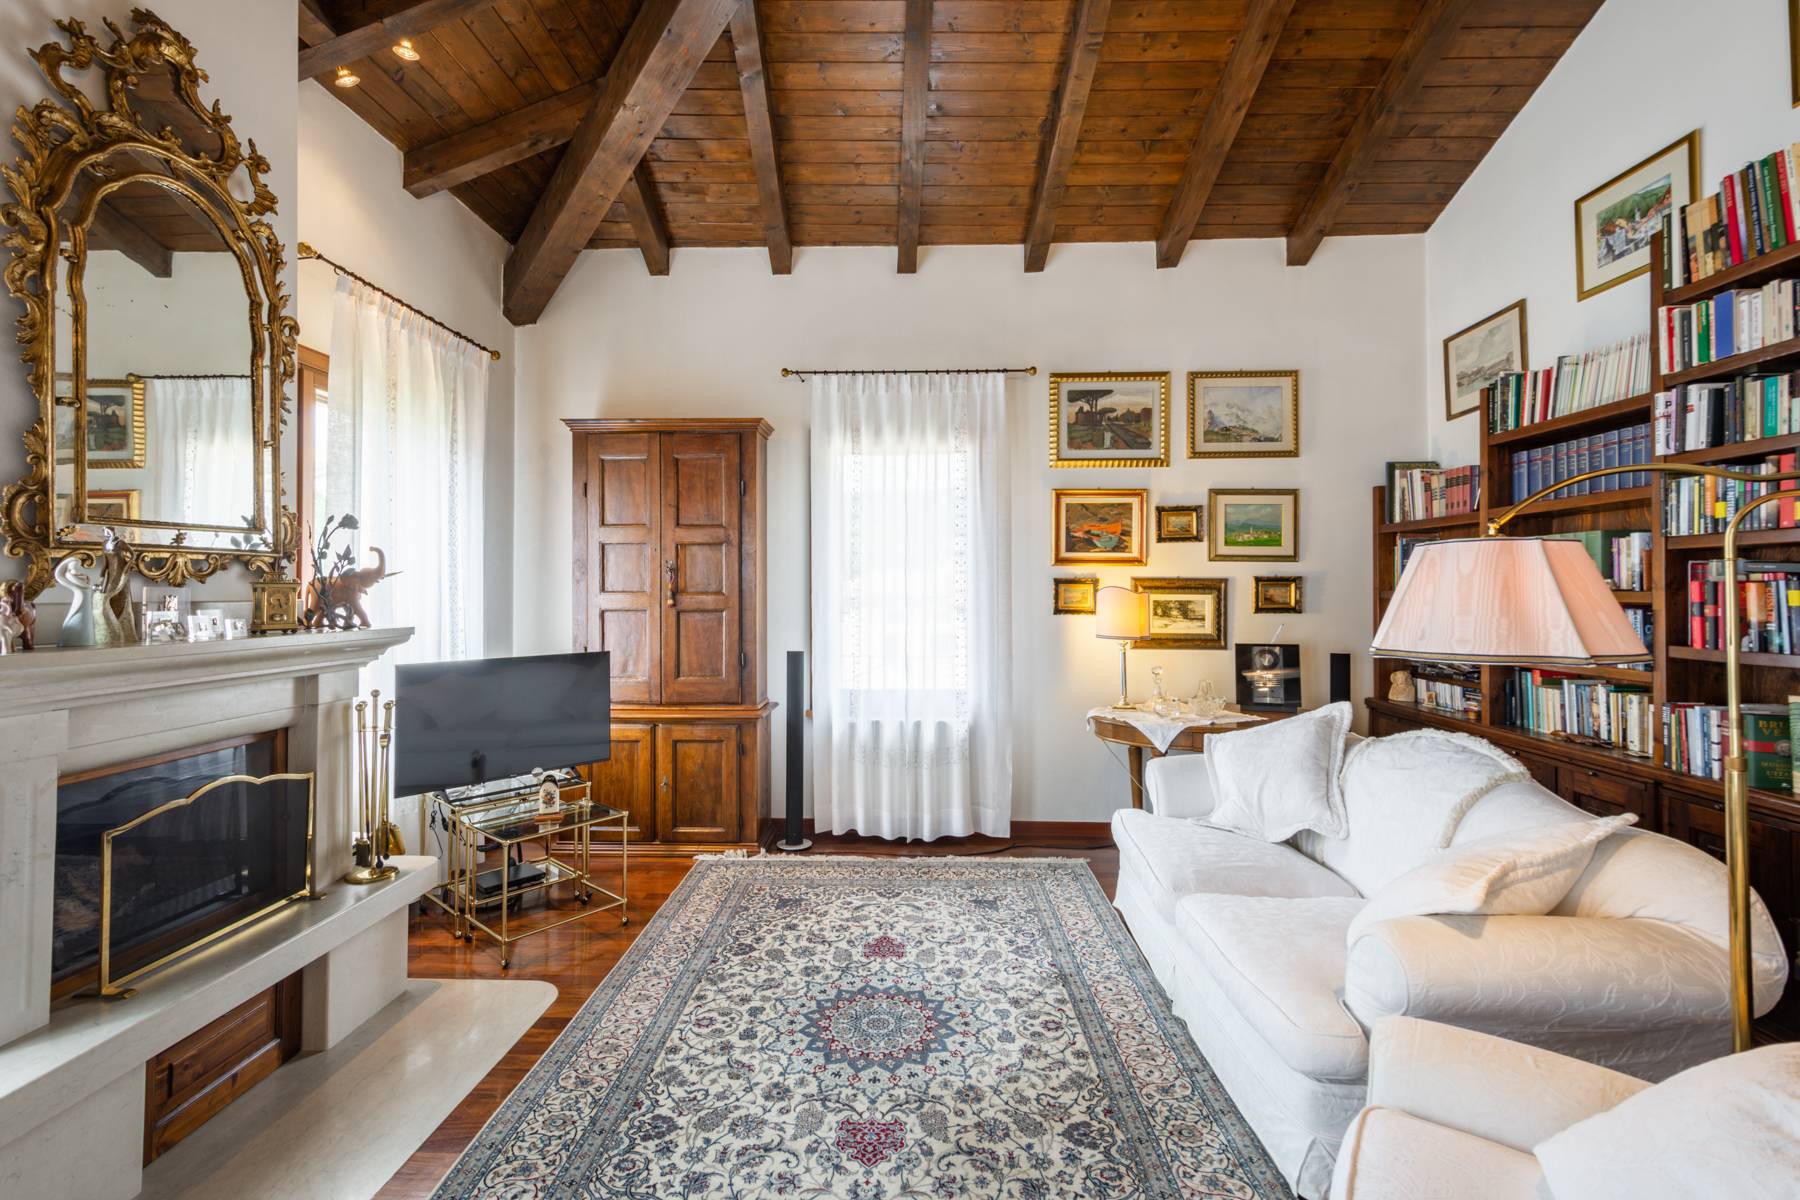 Splendido attico in Villa  a pochi minuti dal centro storico di Verona - 2